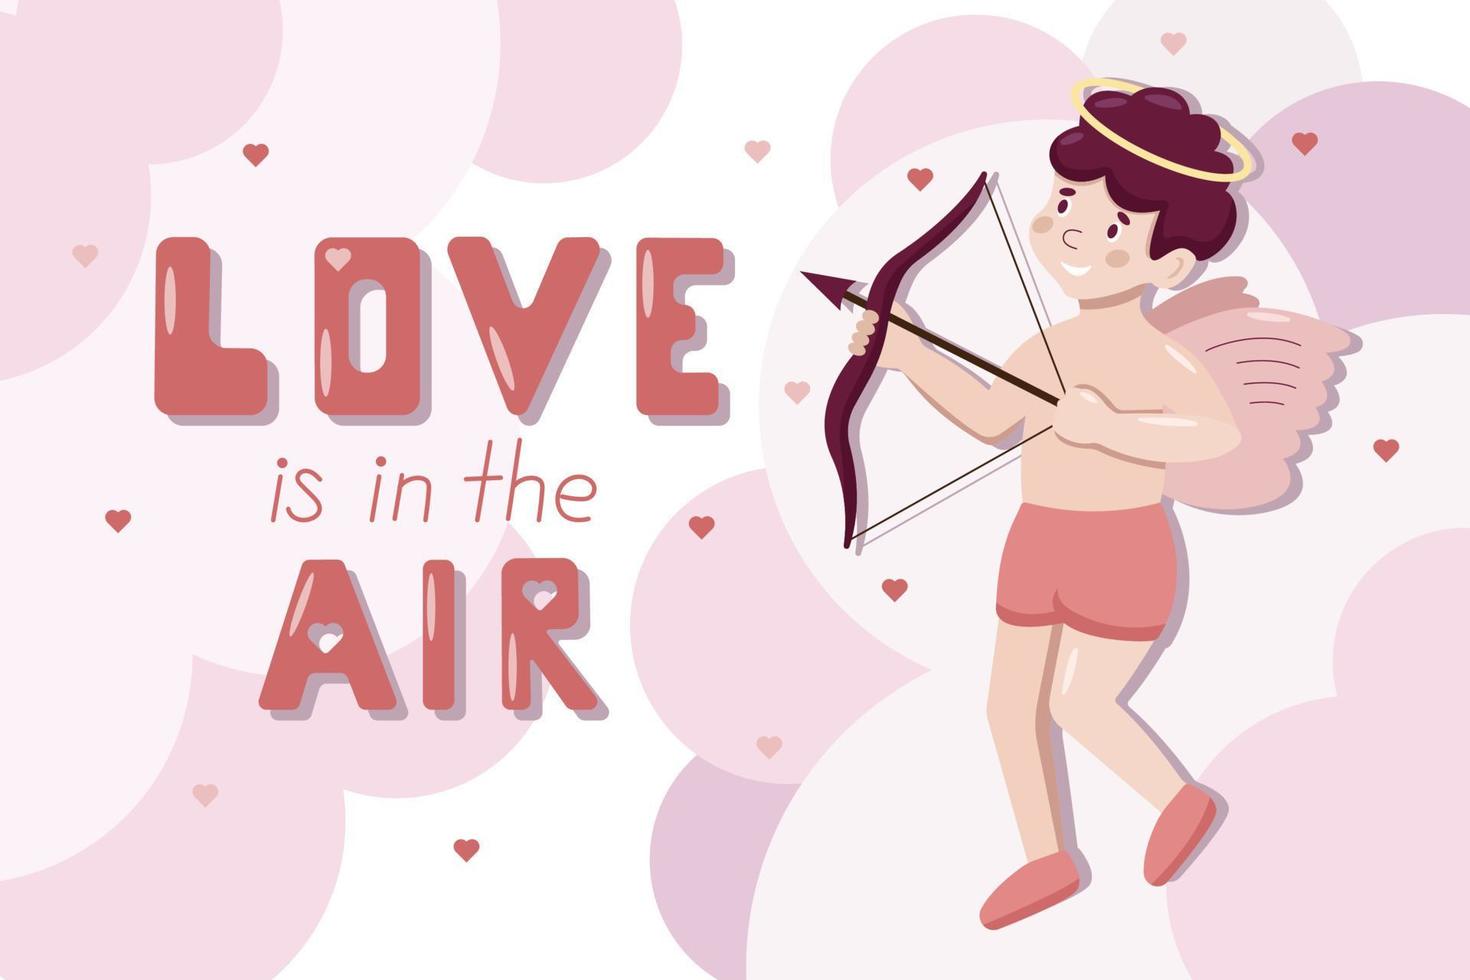 niedliches Cartoon-Vektor-Grußplakat mit kleinem Amor. liebe liegt in der luftbeschriftung. Valentinstag-Konzept. Engel schießt aus dem Bogen in rosa Wolken auf das Herz. vektor